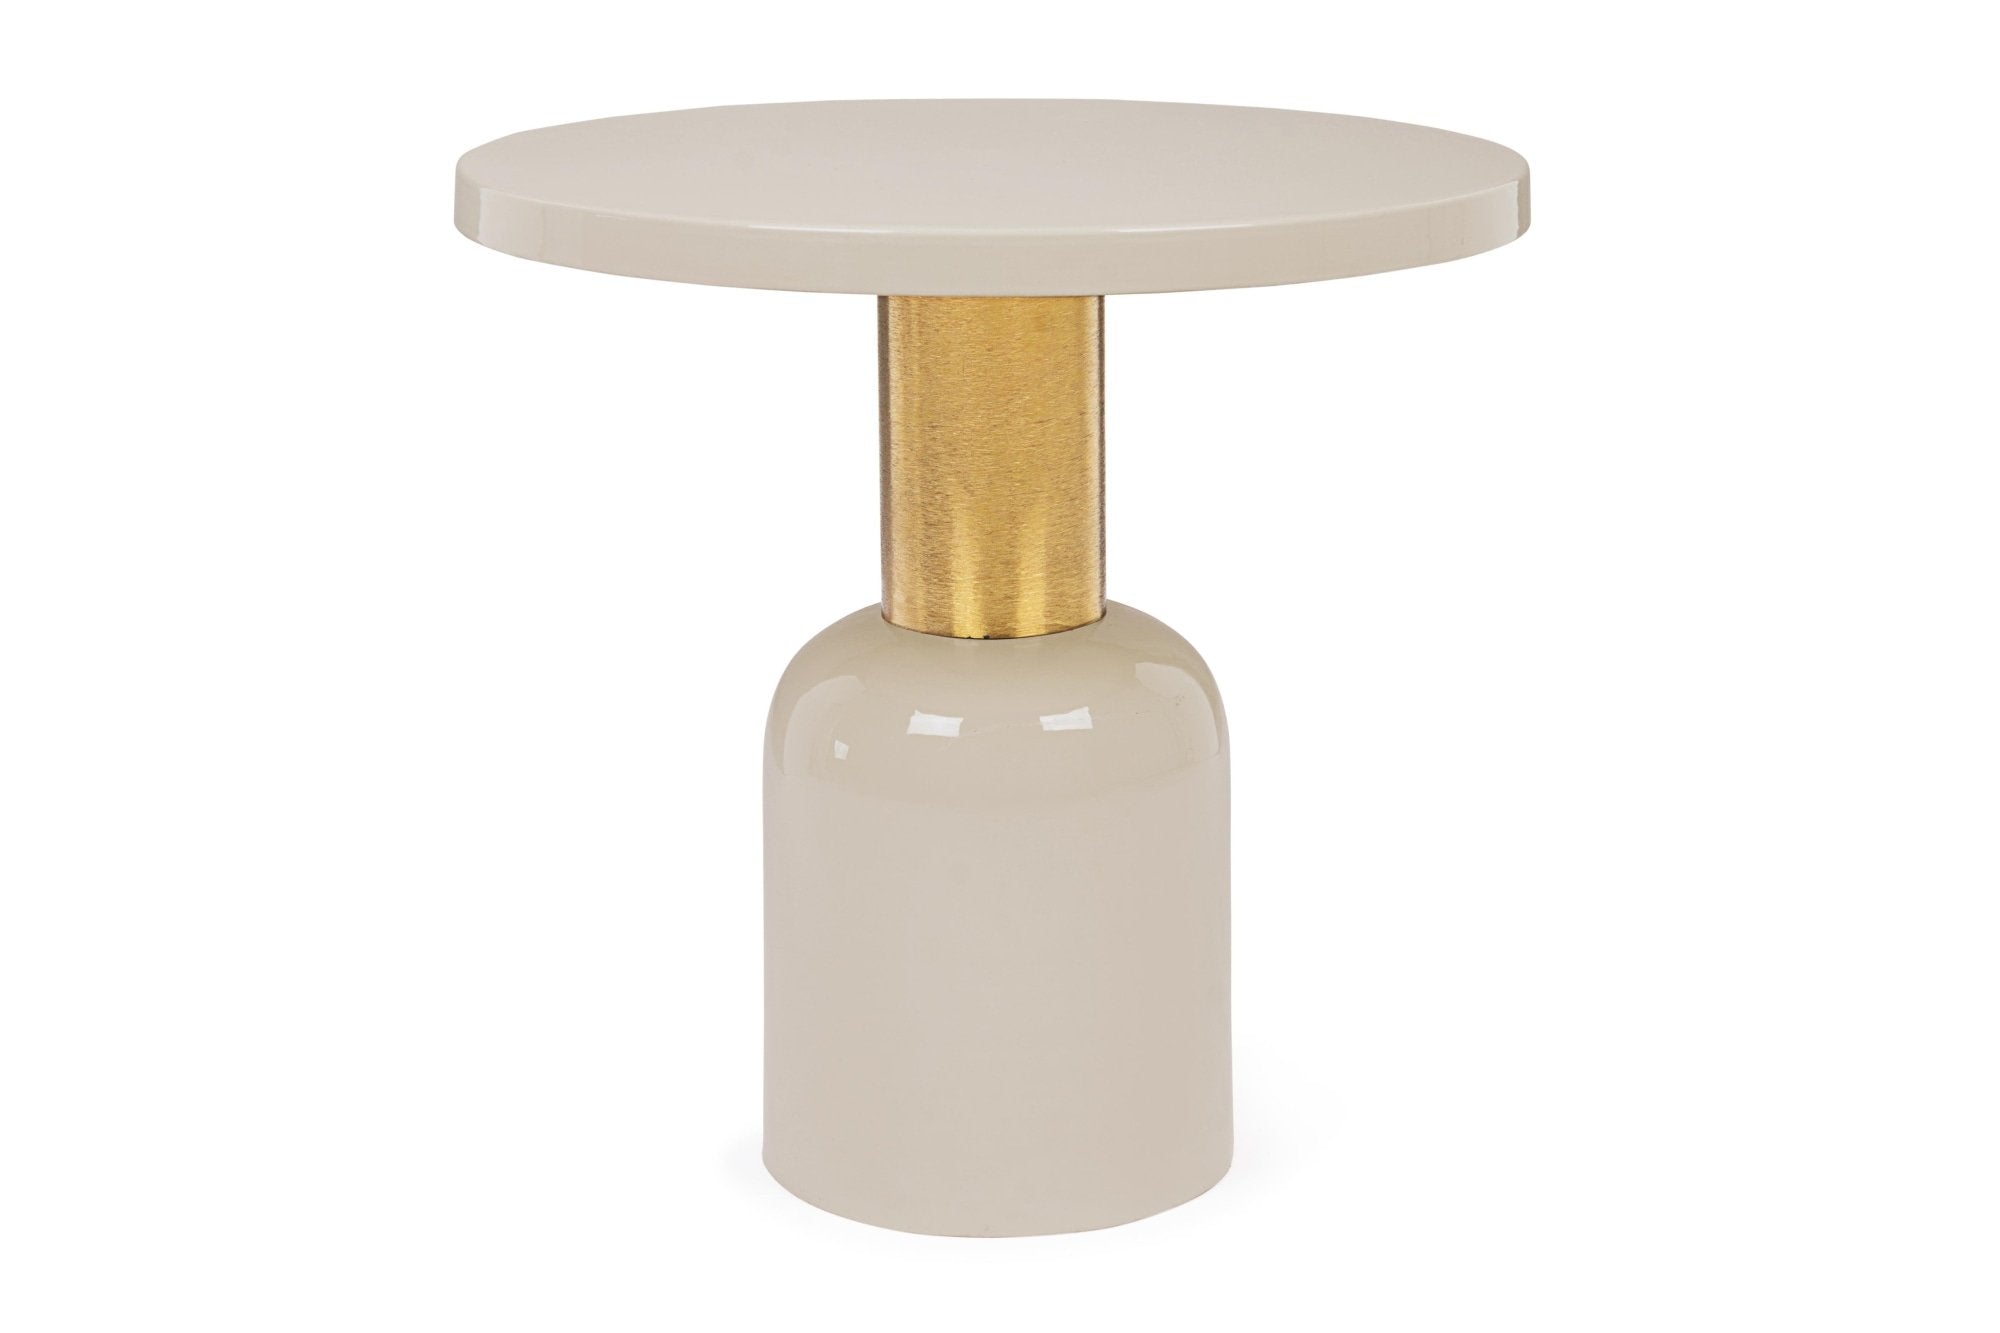 Lerakóasztal - NALIMA cream lerakóasztal 50.5cm átmérő